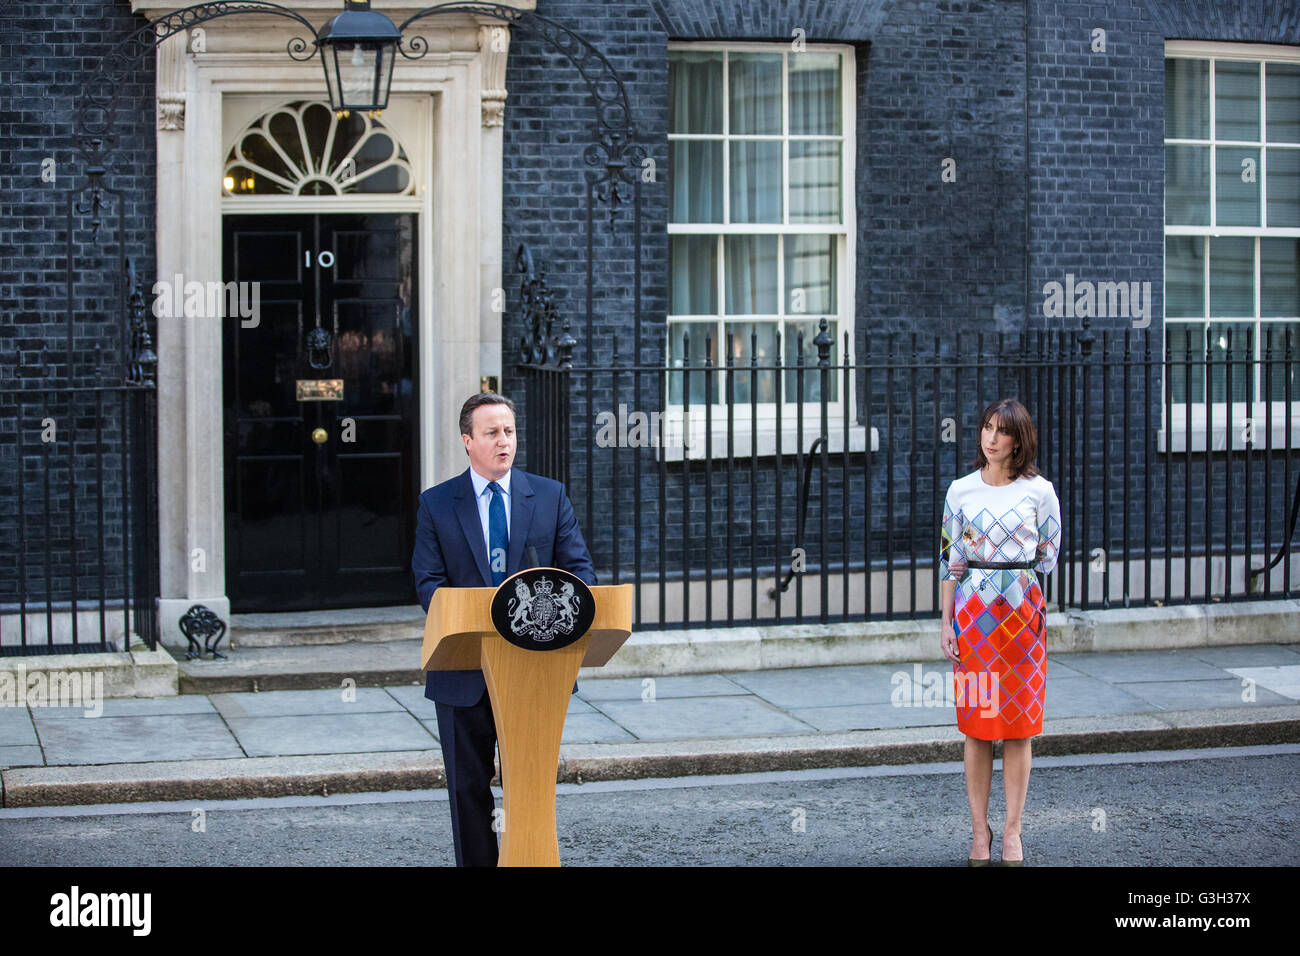 Londres, Reino Unido. 24 de junio de 2016. El Primer Ministro David Cameron, acompañado por su esposa, Samantha, anuncia su dimisión delante del número 10 de Downing Street tras un referéndum a favor del Reino Unido, dejando a la Unión Europea. Crédito: Mark Kerrison/Alamy Live News Foto de stock